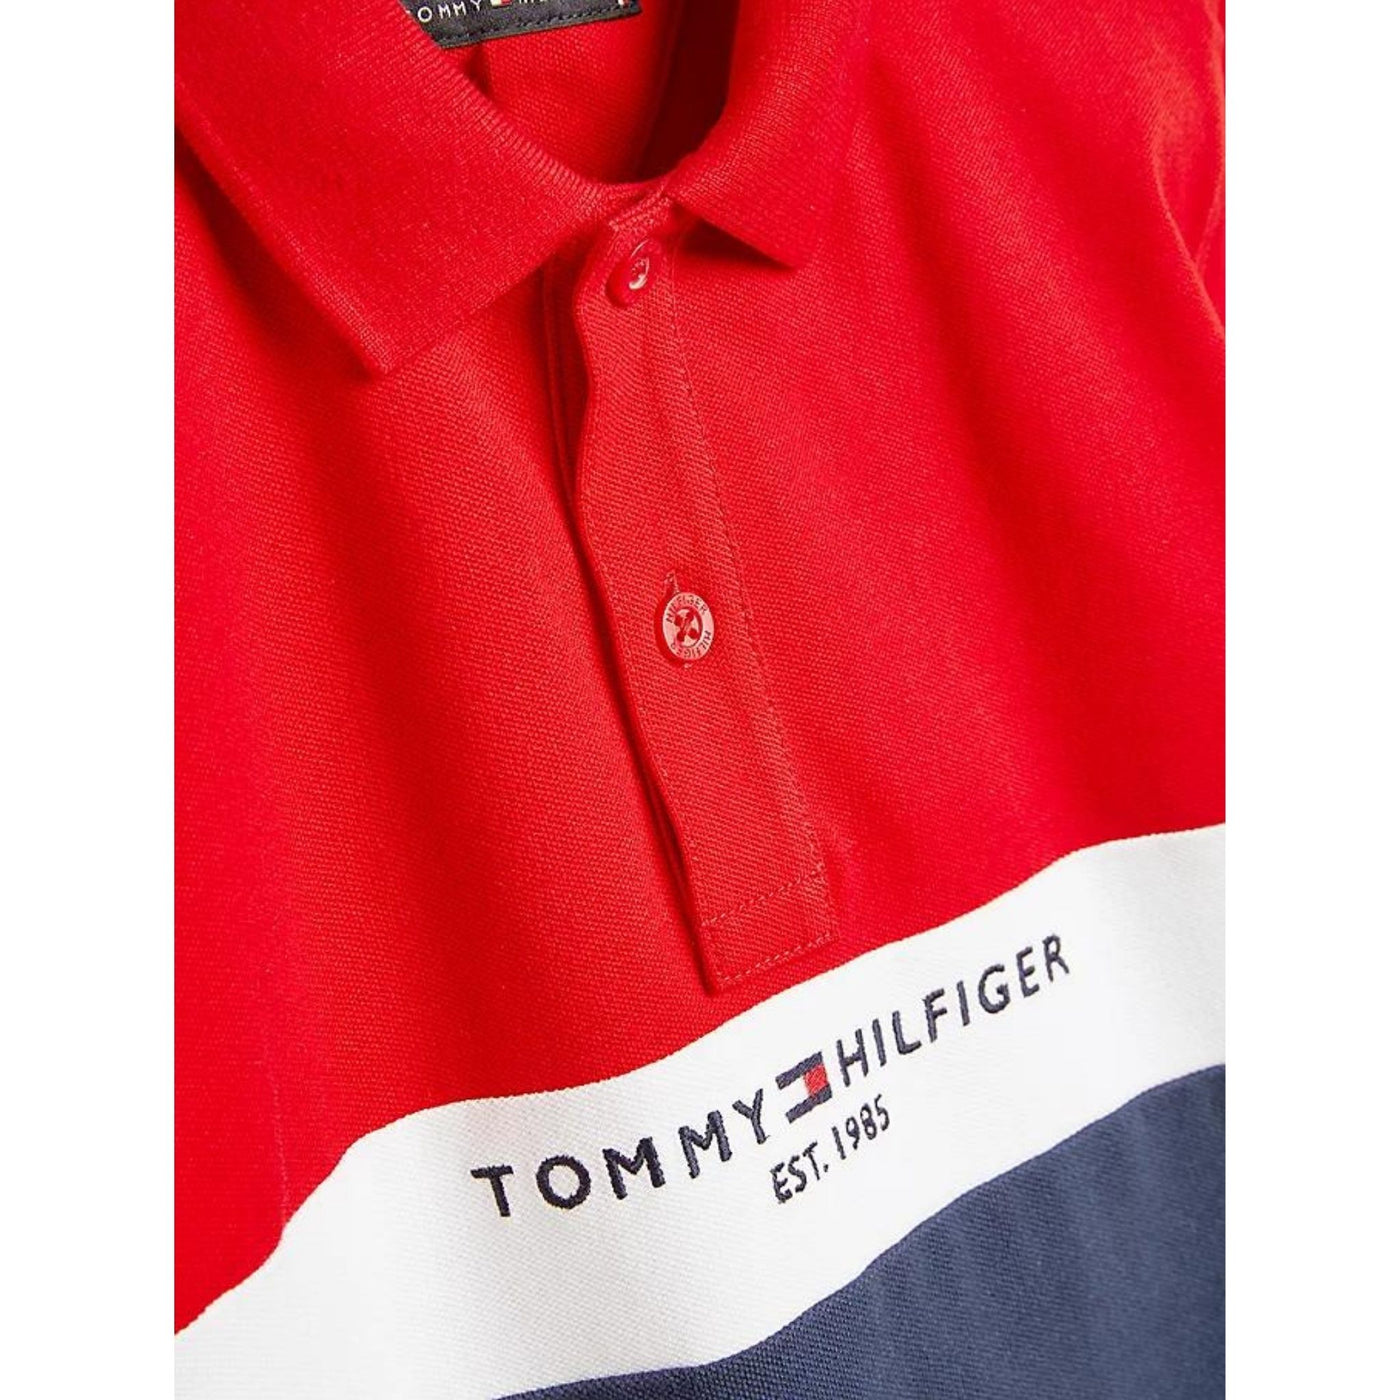 Polo bambino Tommy Hilfiger con motivo colore a blocchi e logo brand frontale.